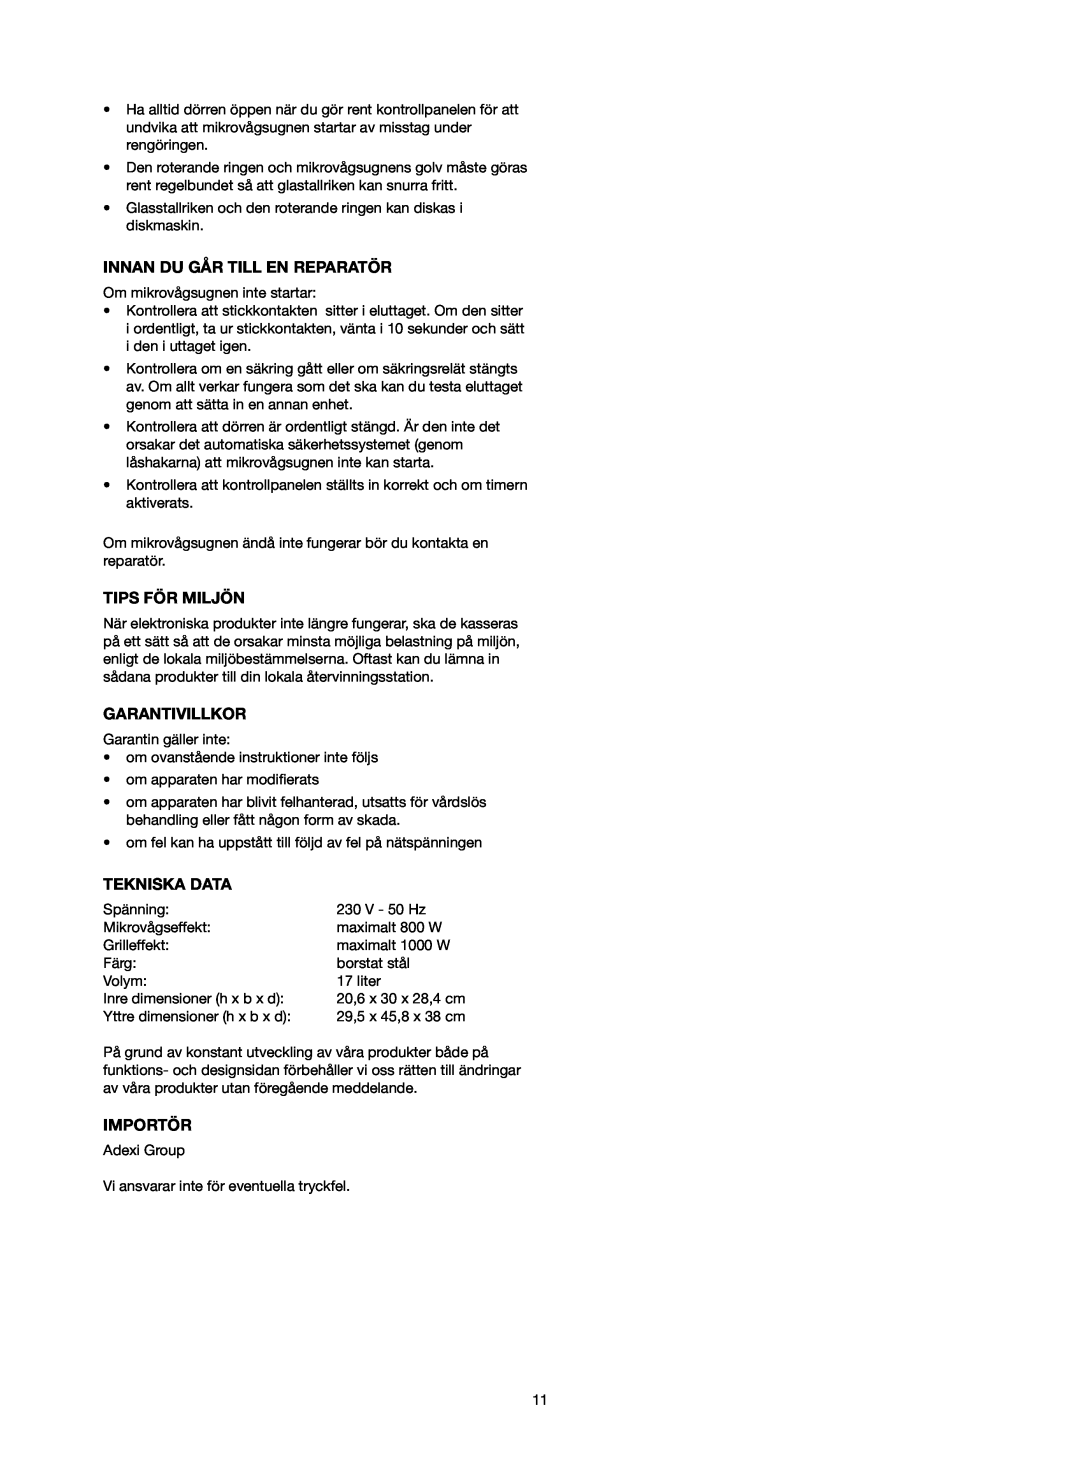 Melissa 753-087 manual Innan Du Går Till En Reparatör, Tips För Miljön, Garantivillkor, Tekniska Data, Importör 